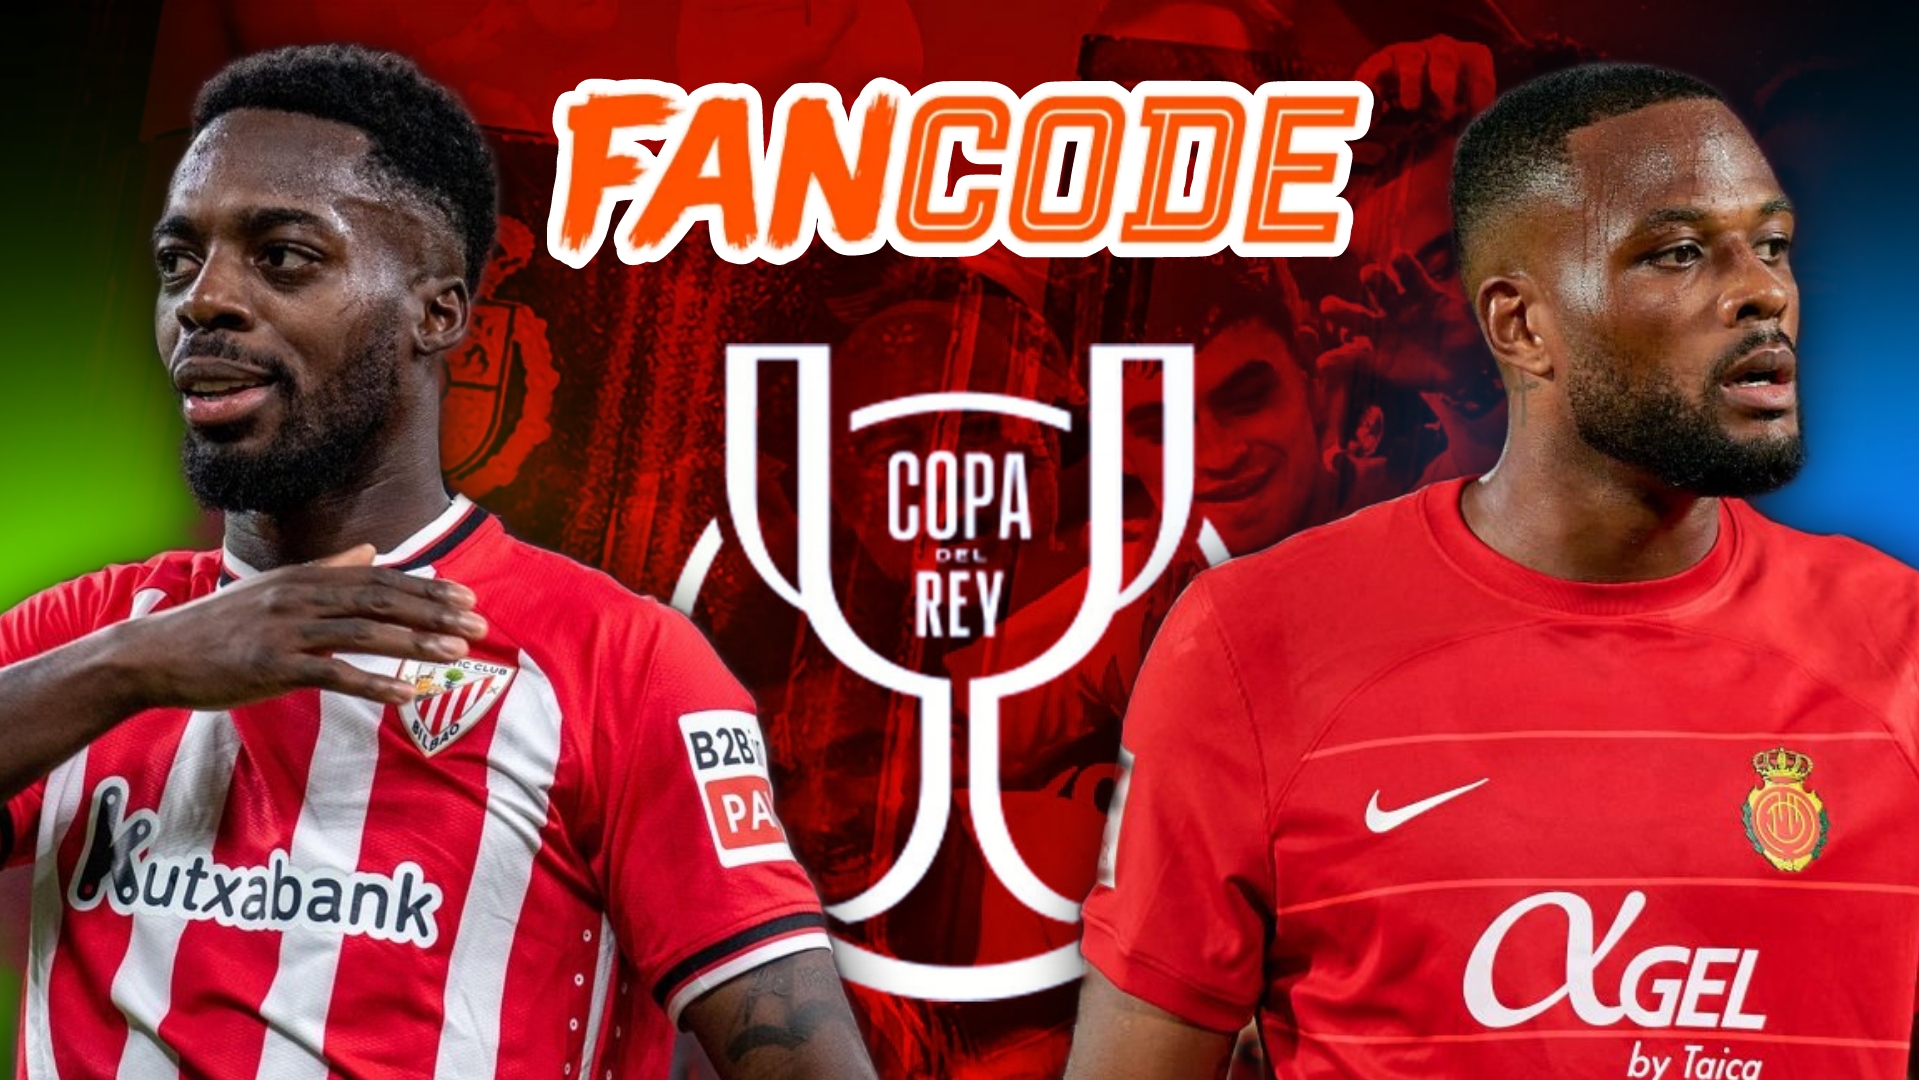 Copa del Rey Final Preview: Athletic Club vs Mallorca on Fancode